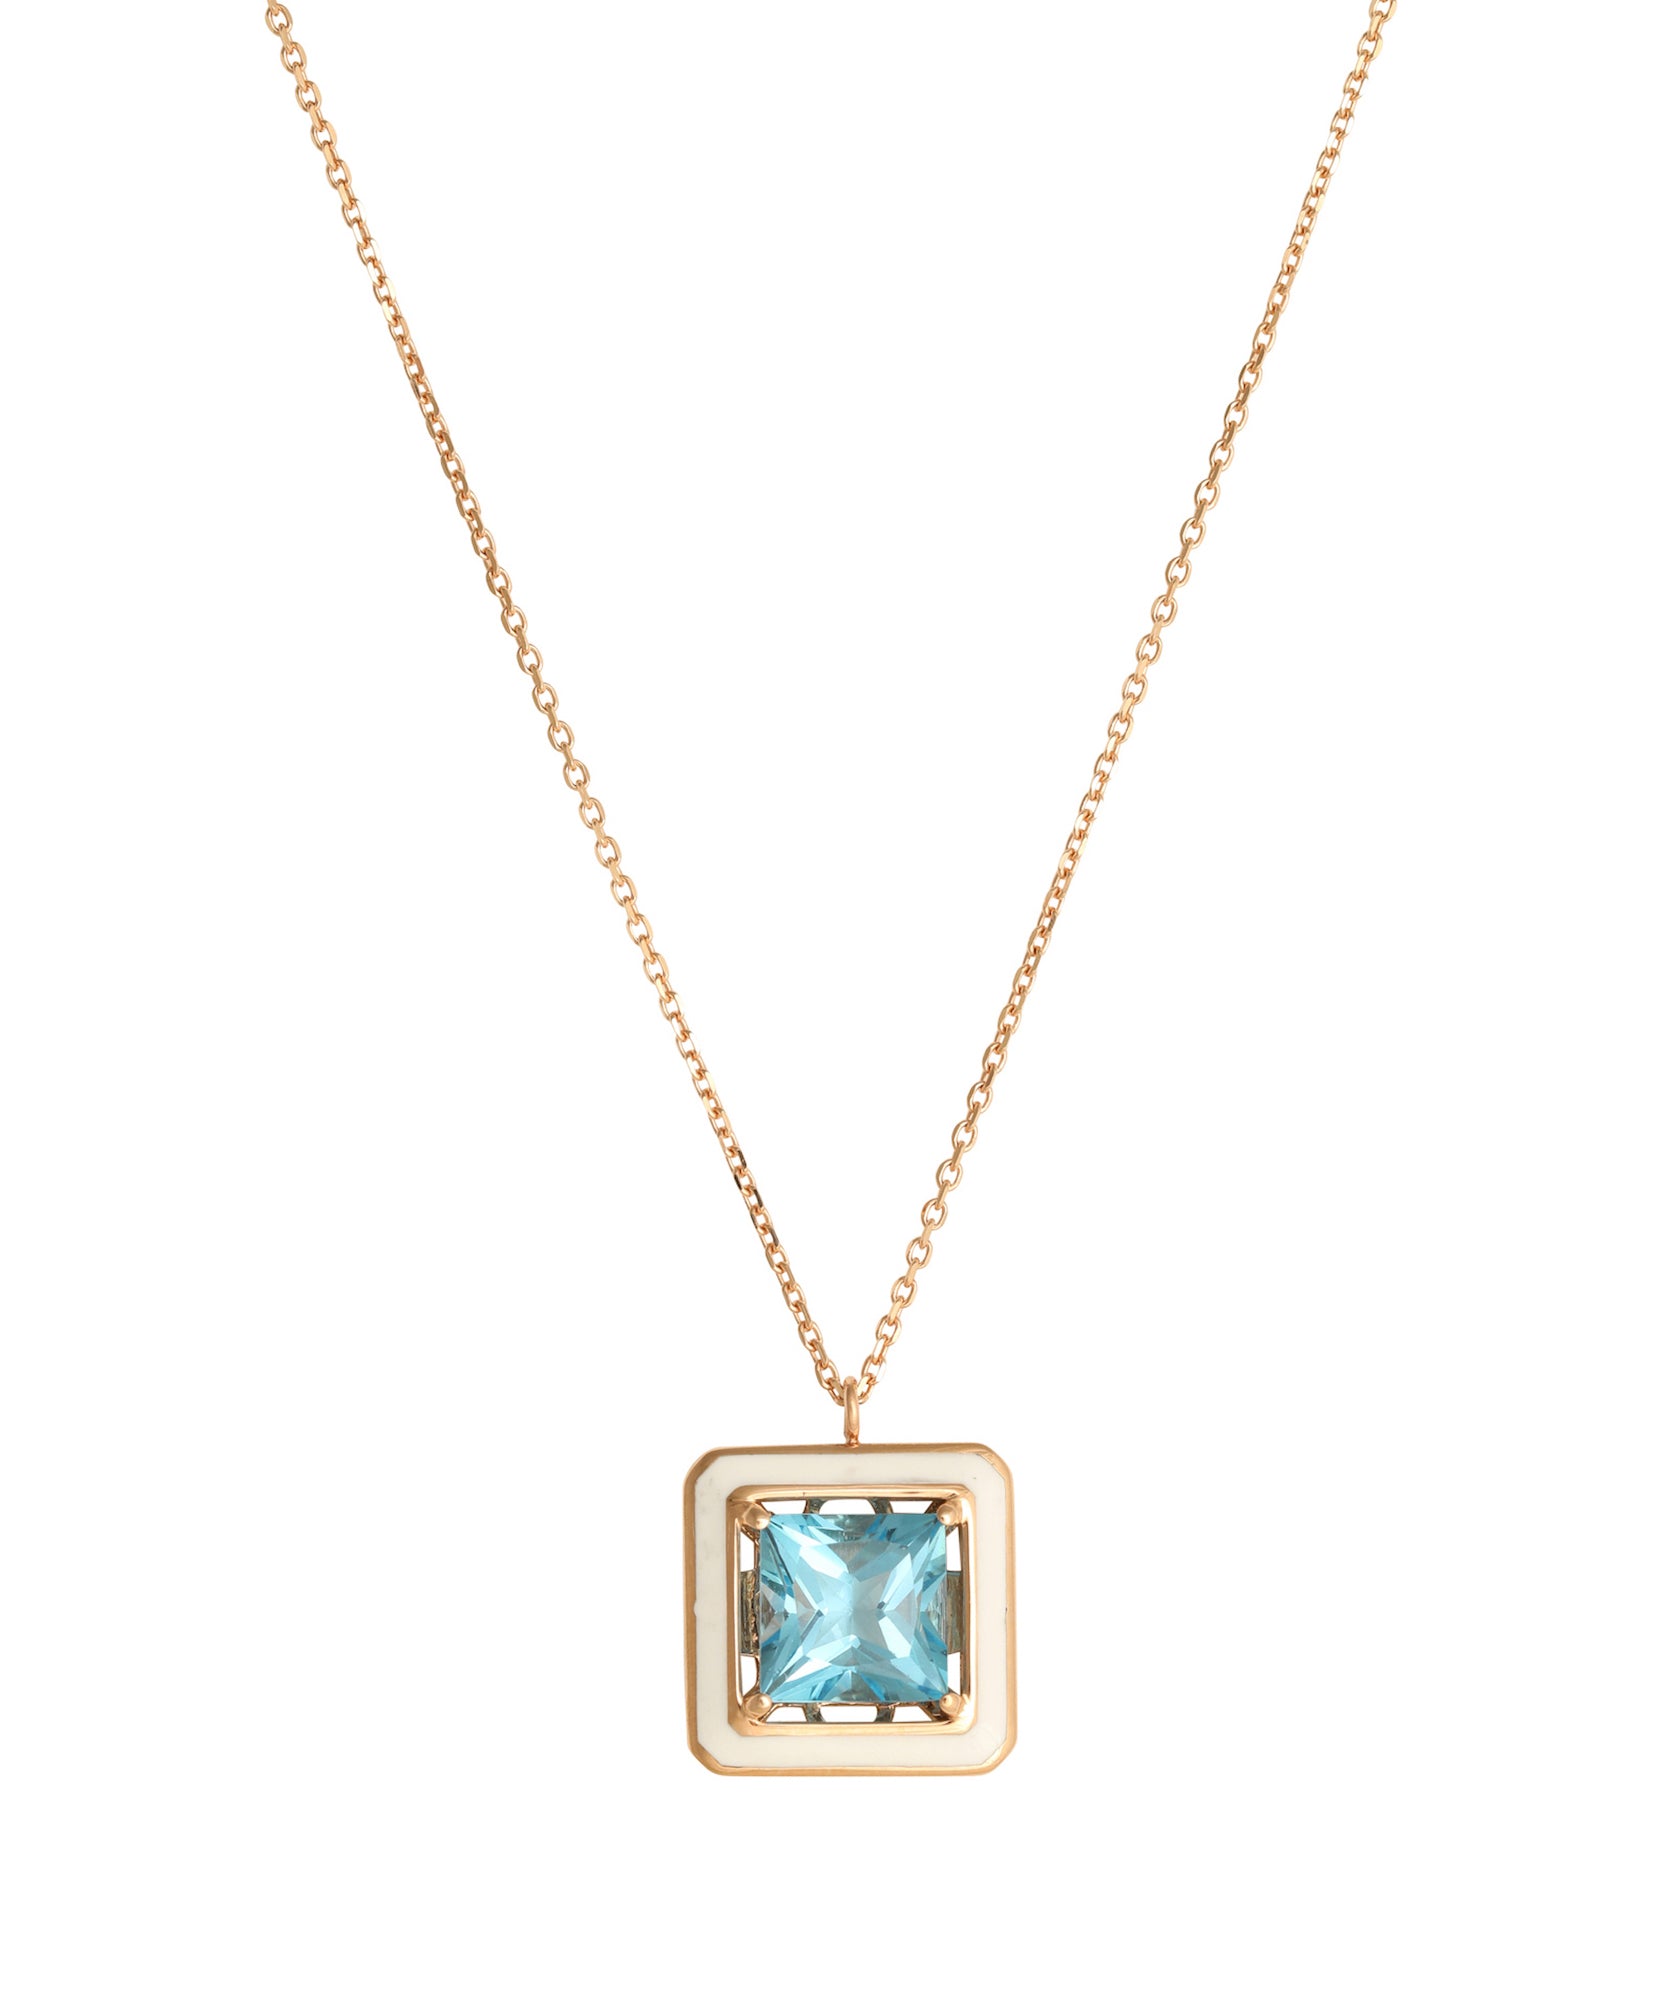 J by boghossian, blue topaze, necklace, white enamel, gold